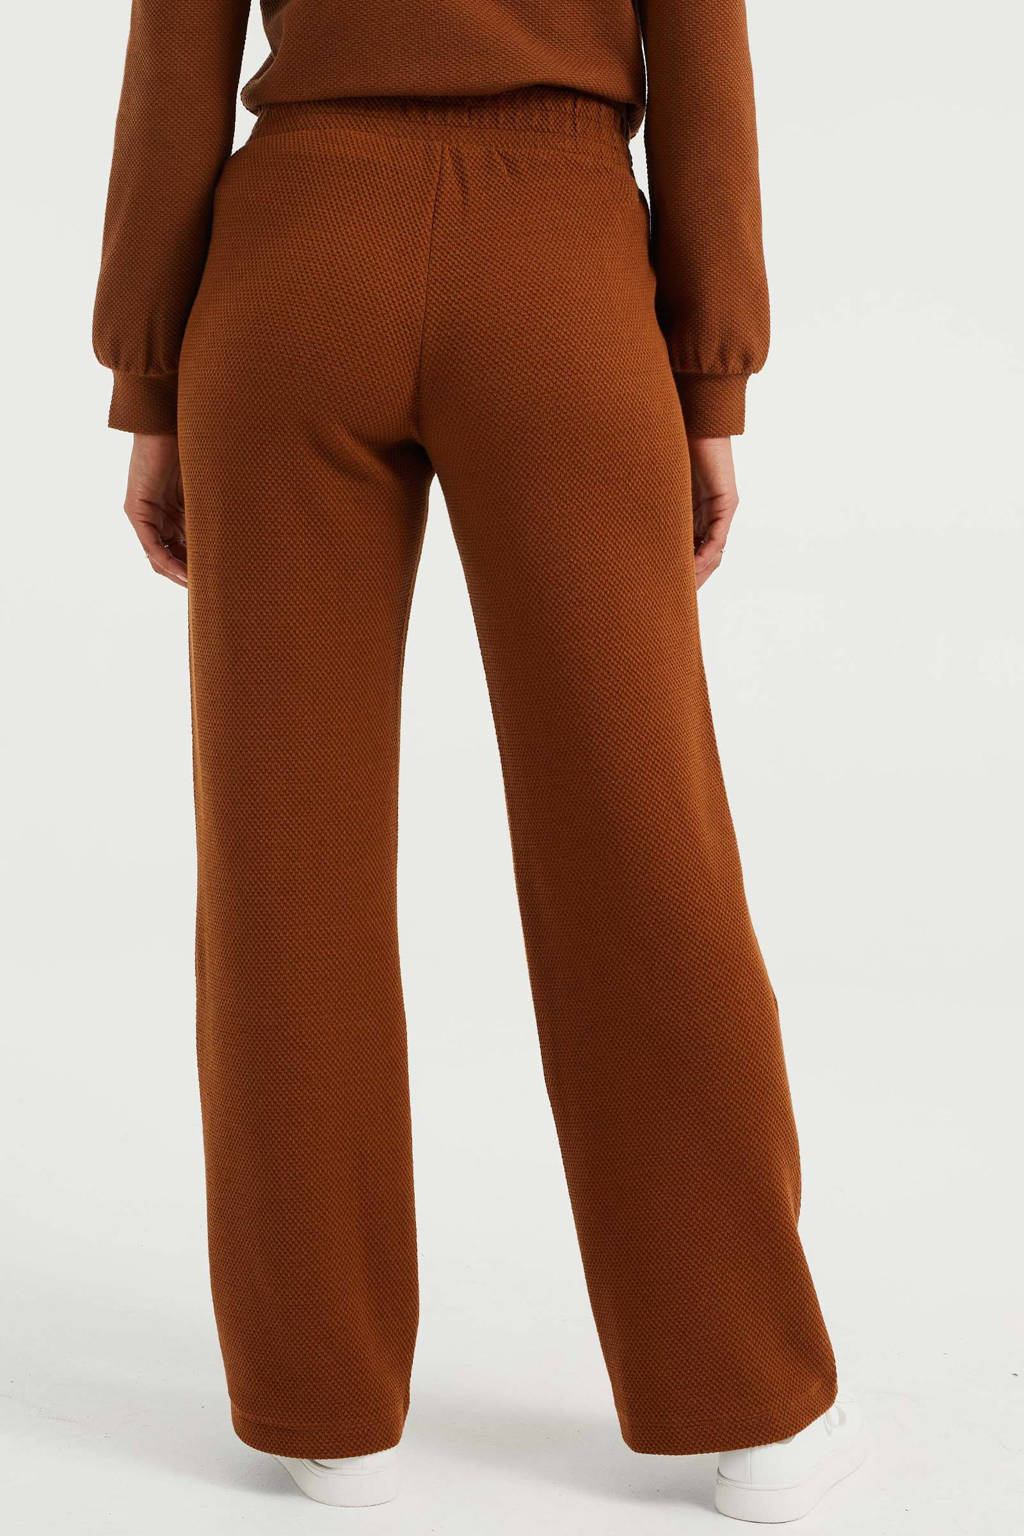 Respect Vermoorden Kruik WE Fashion wide leg broek met textuur bruin | wehkamp